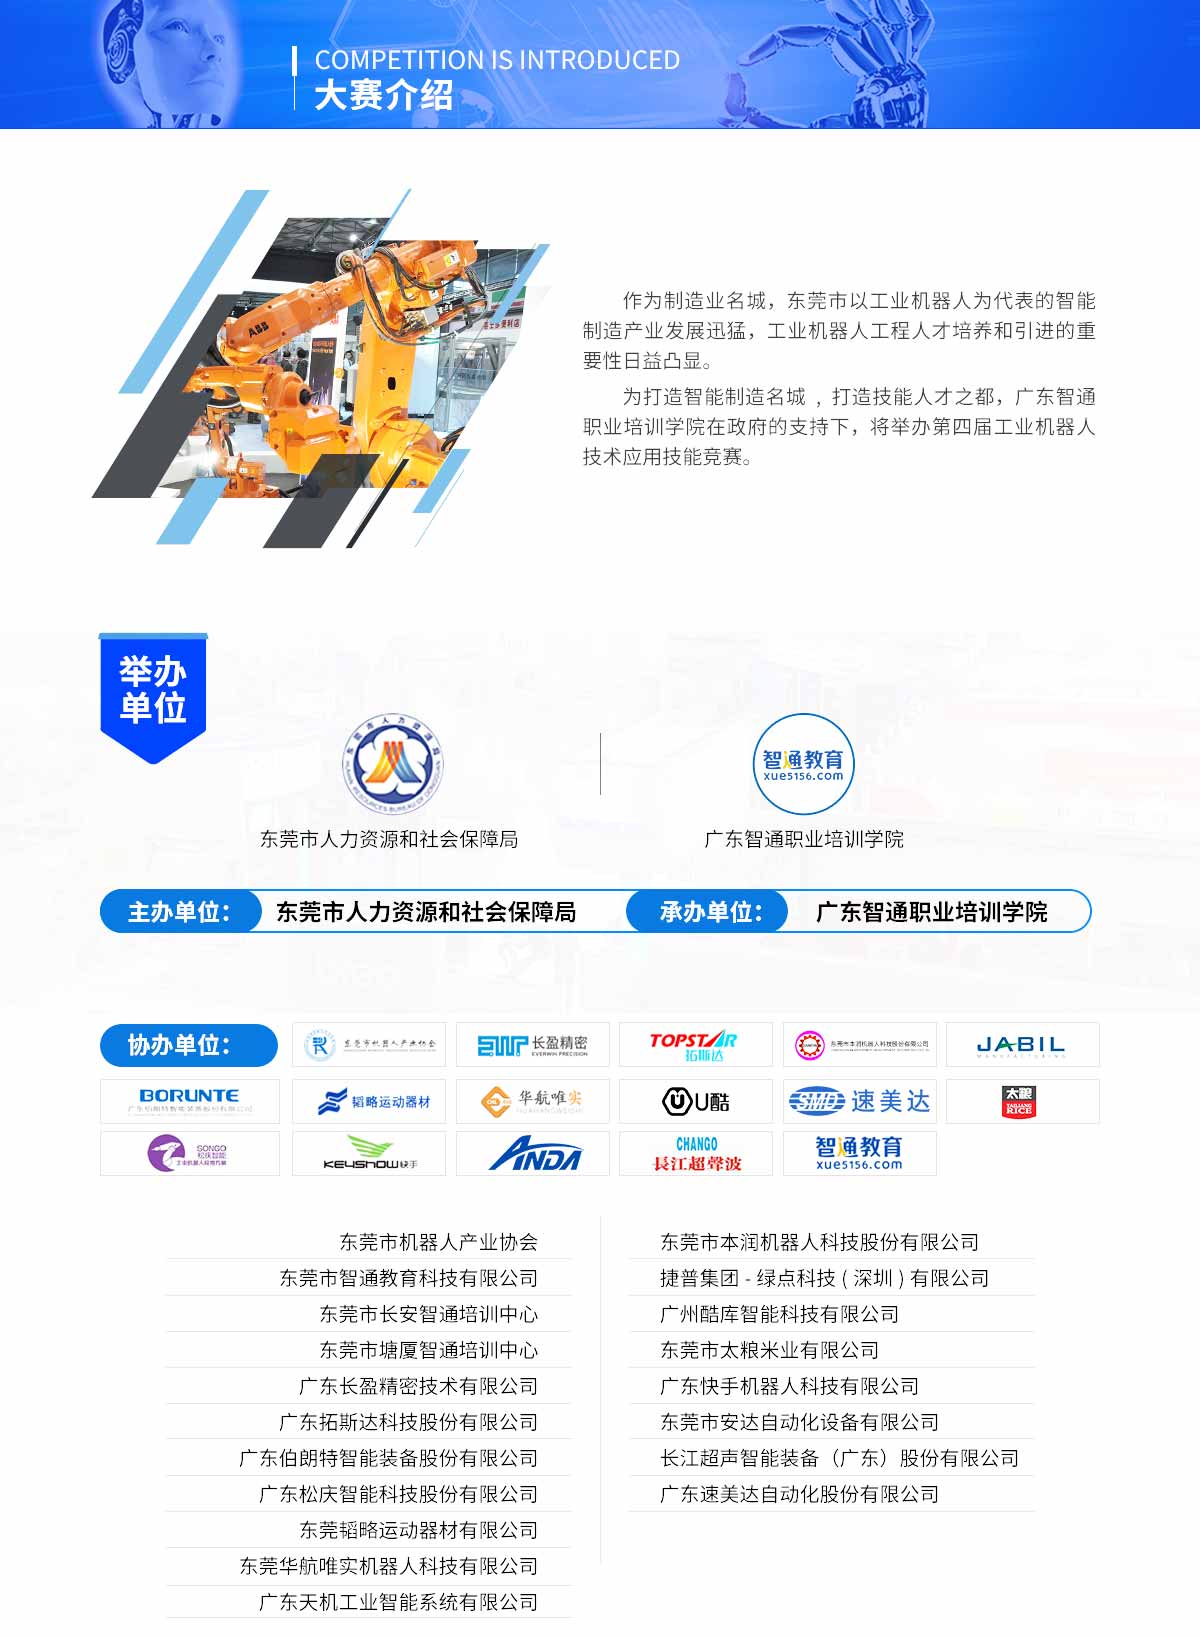 2019年9月22日东莞市第四届工业机器人大赛简介03